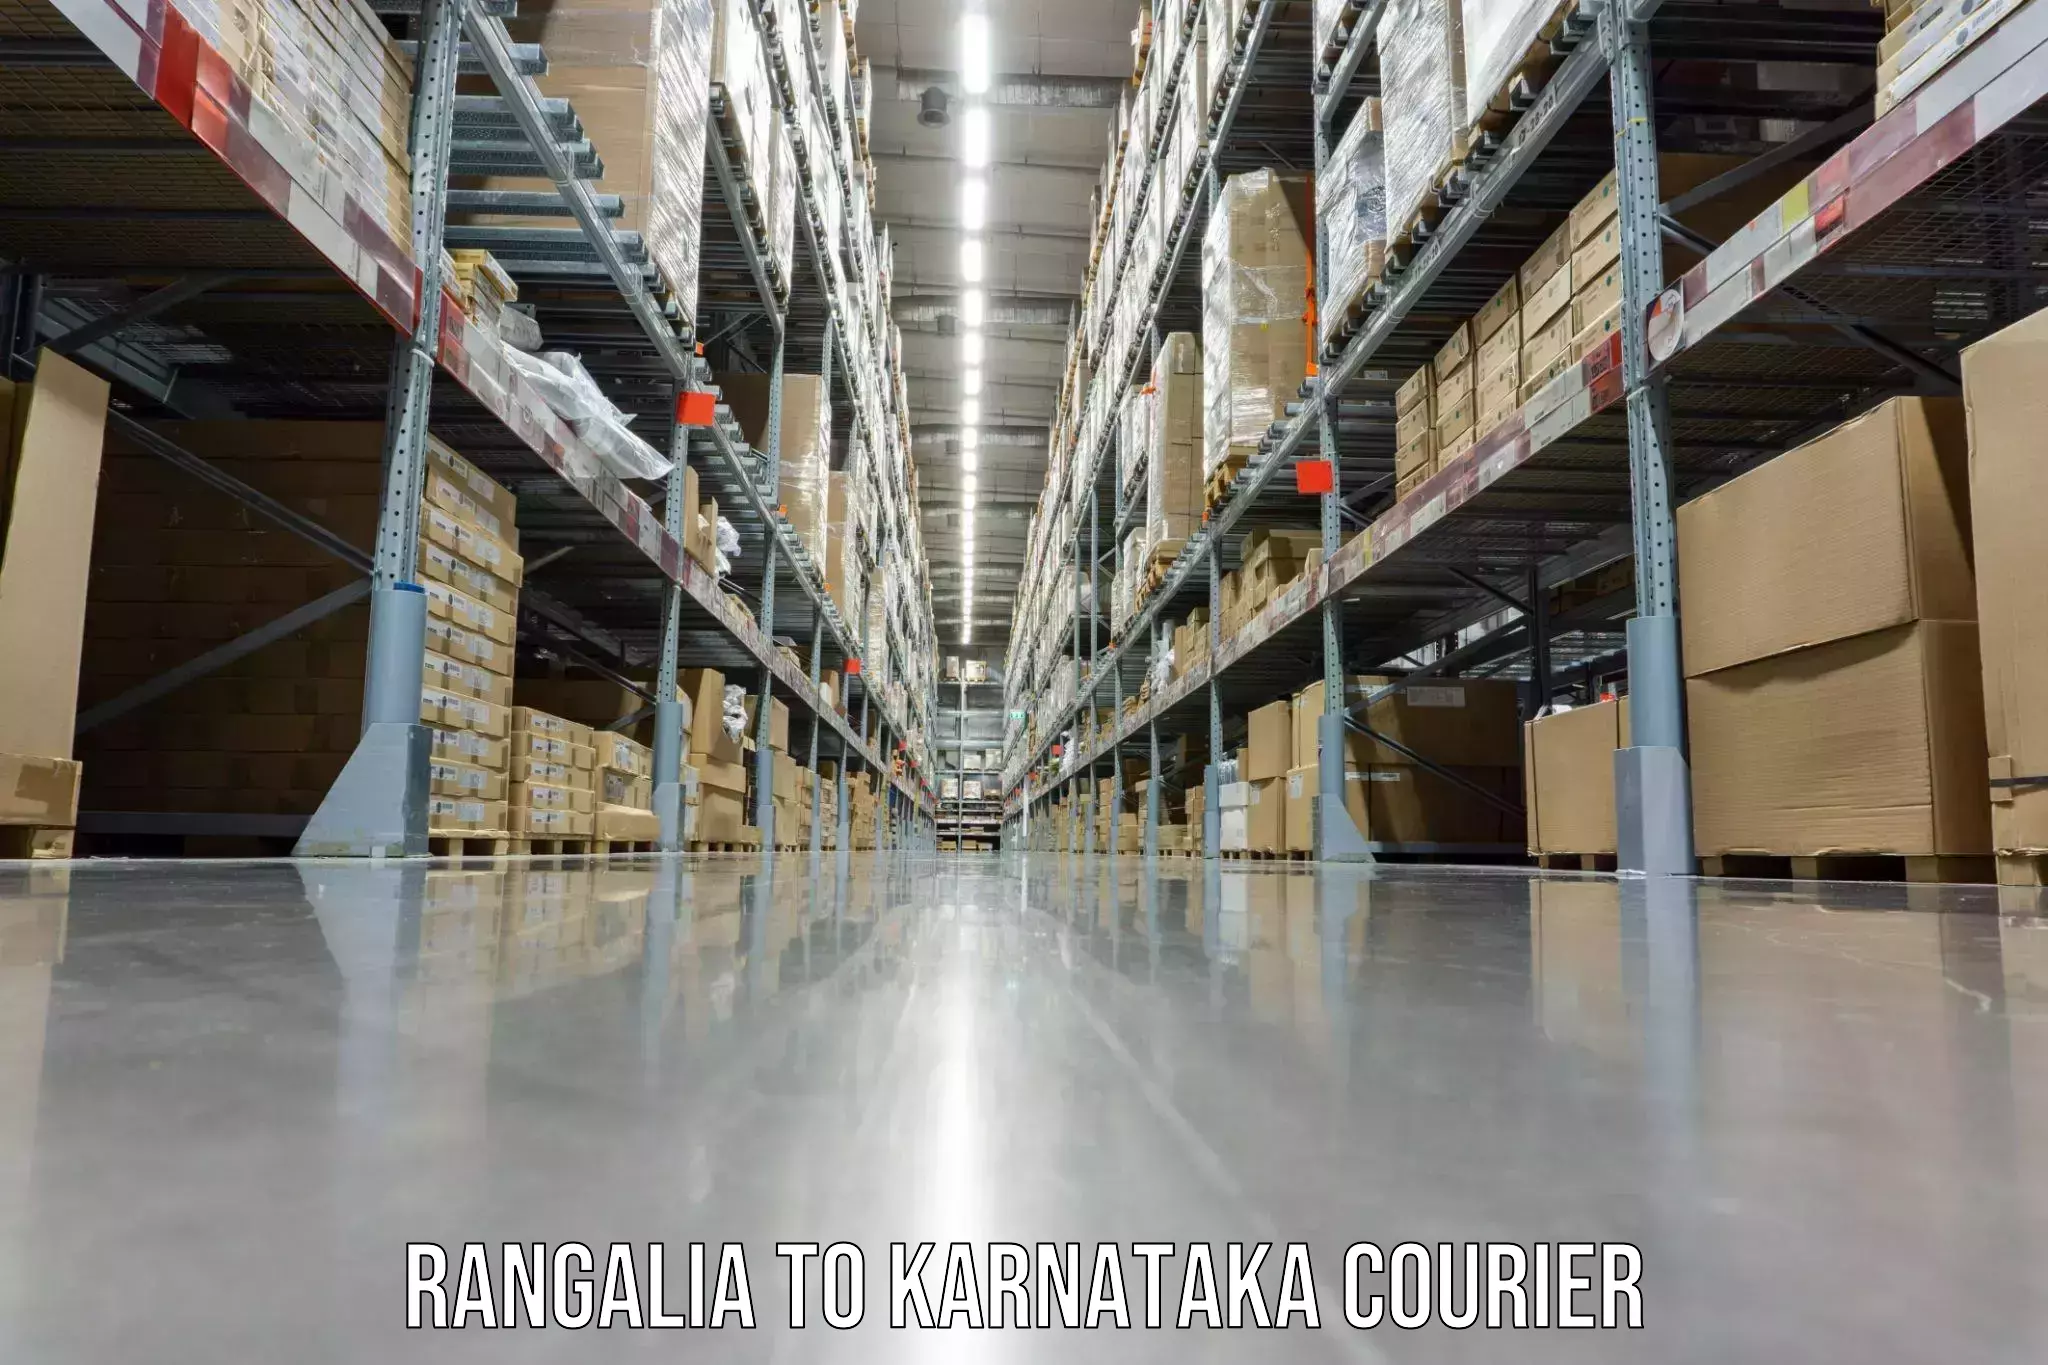 Home shifting experts Rangalia to Ramanathapura